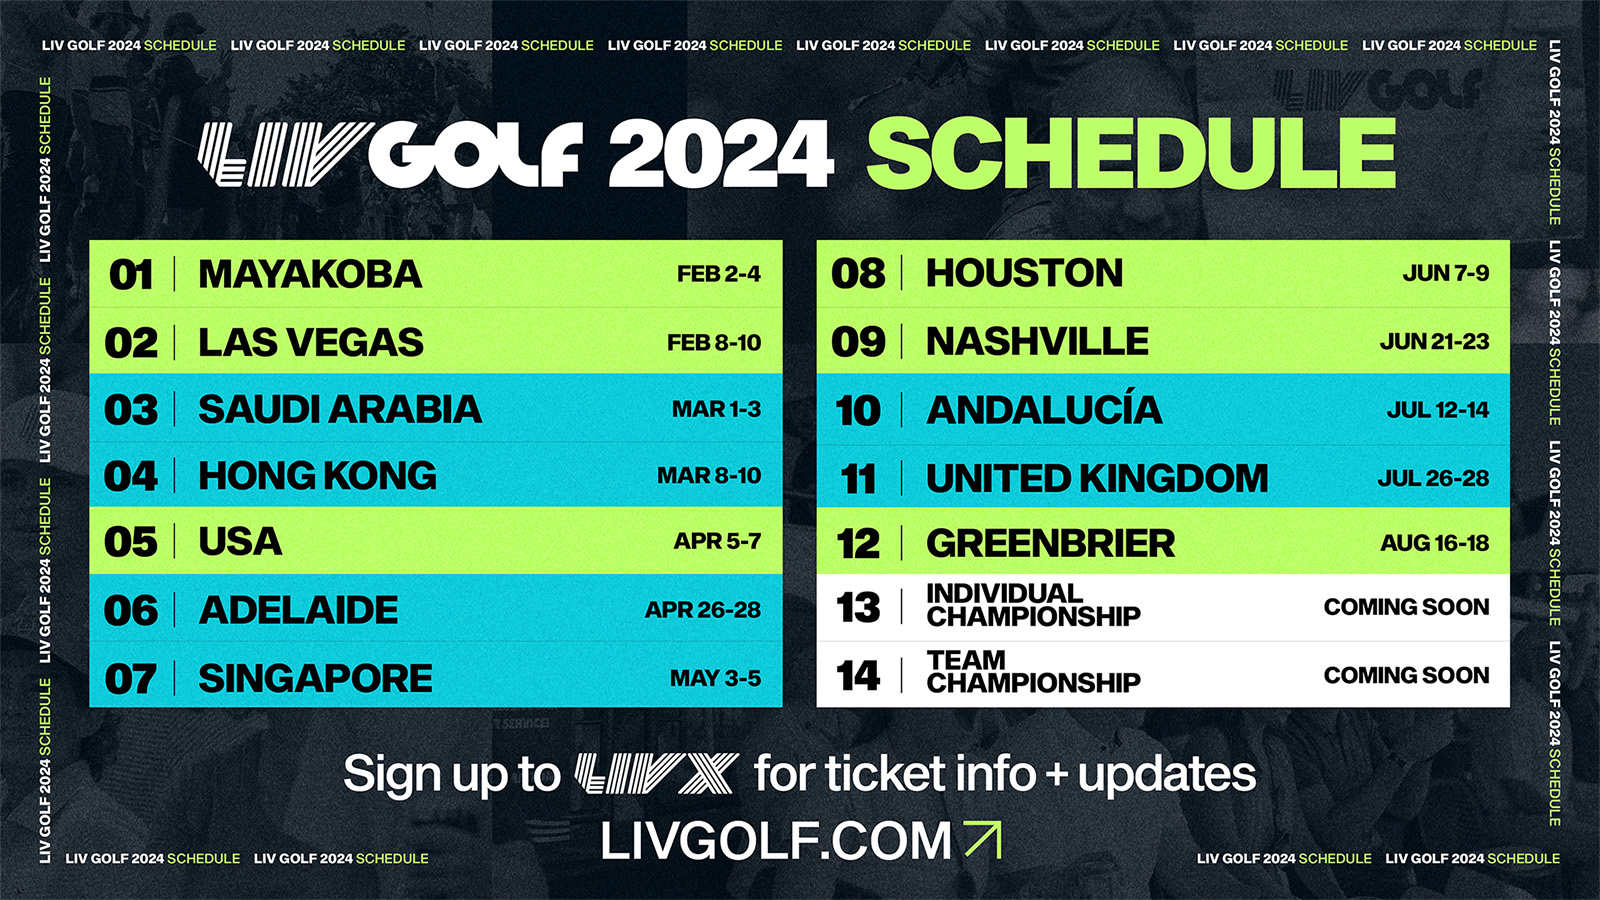 LIV Golf 2024